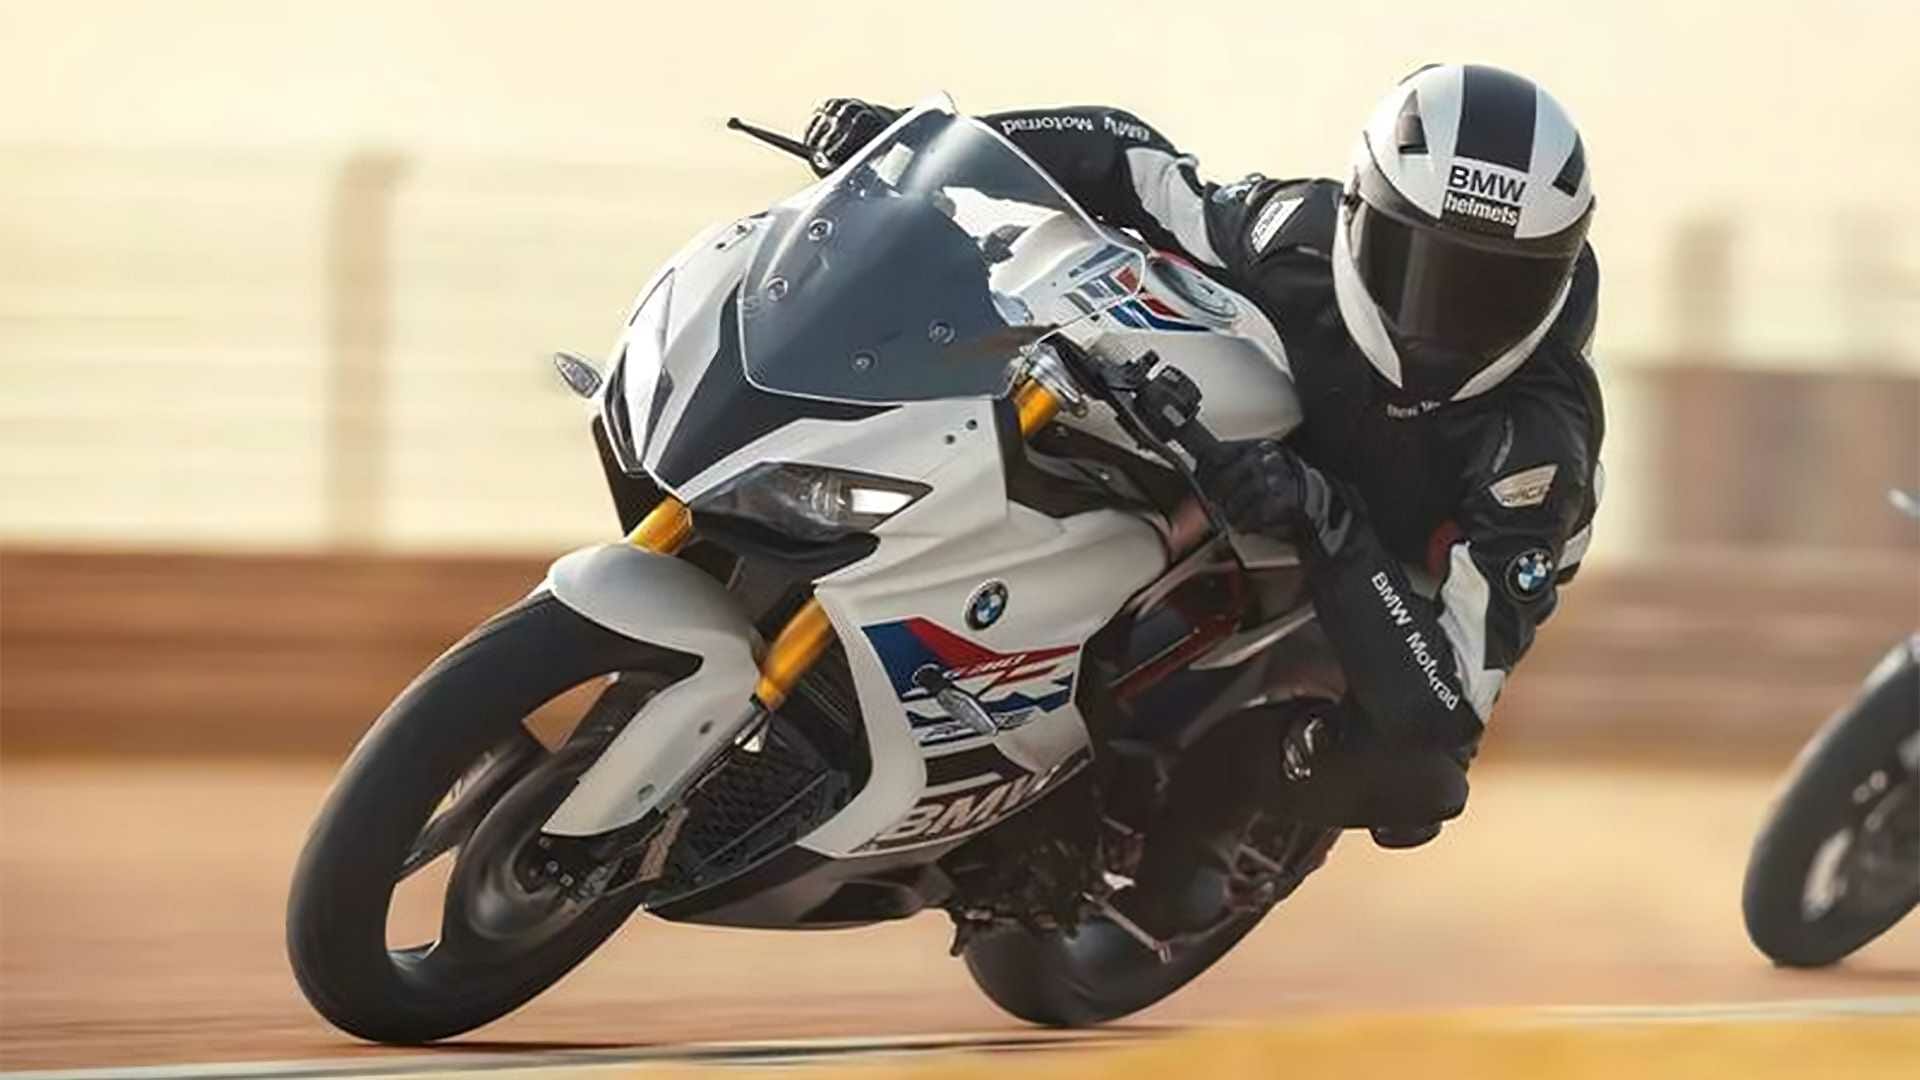 BMW G 310 RR vorgestellt - MOTORCYCLES.NEWS via @motorradnachrichten